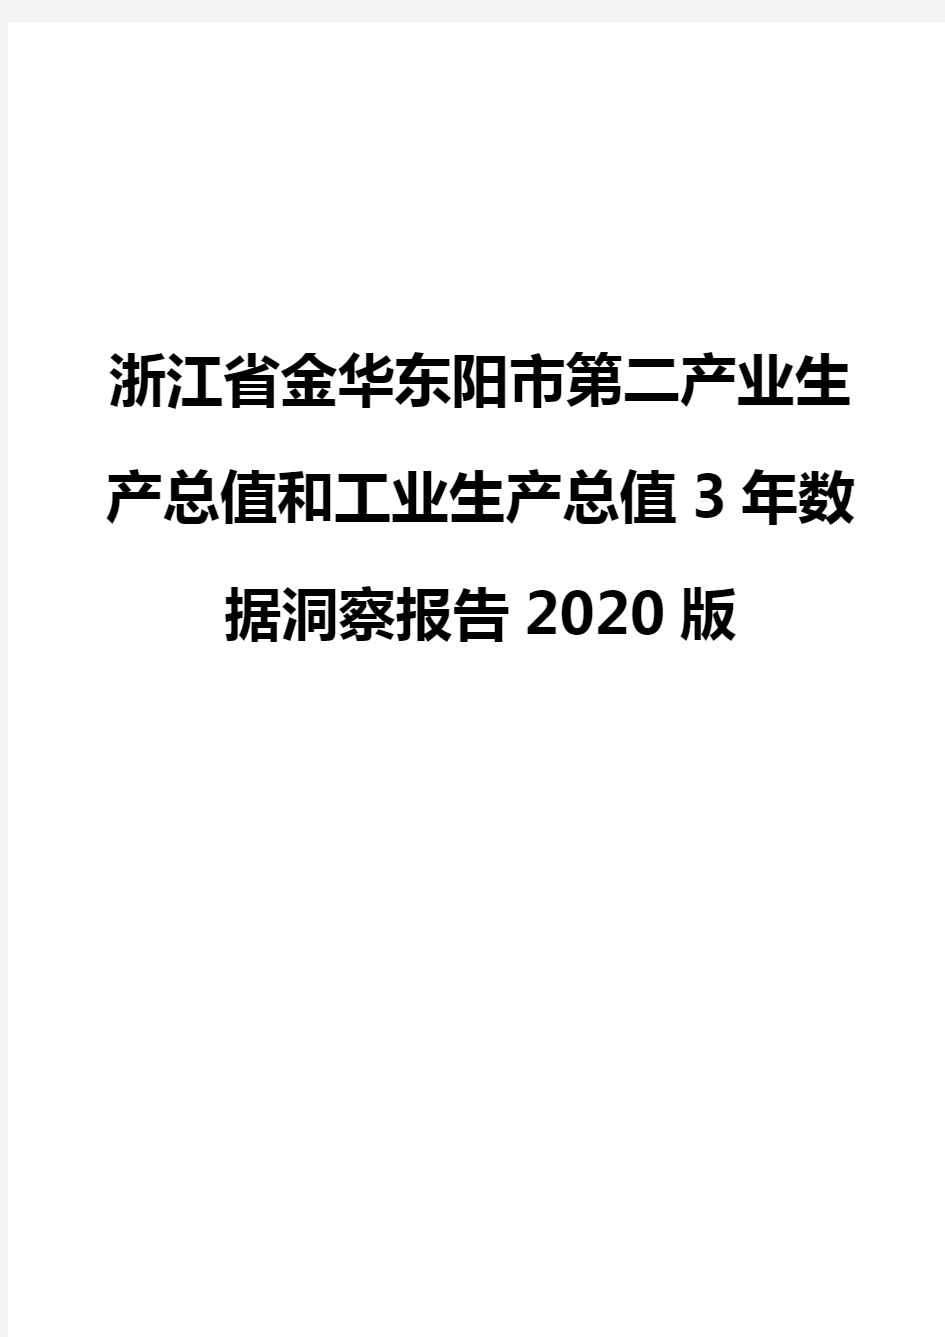 浙江省金华东阳市第二产业生产总值和工业生产总值3年数据洞察报告2020版